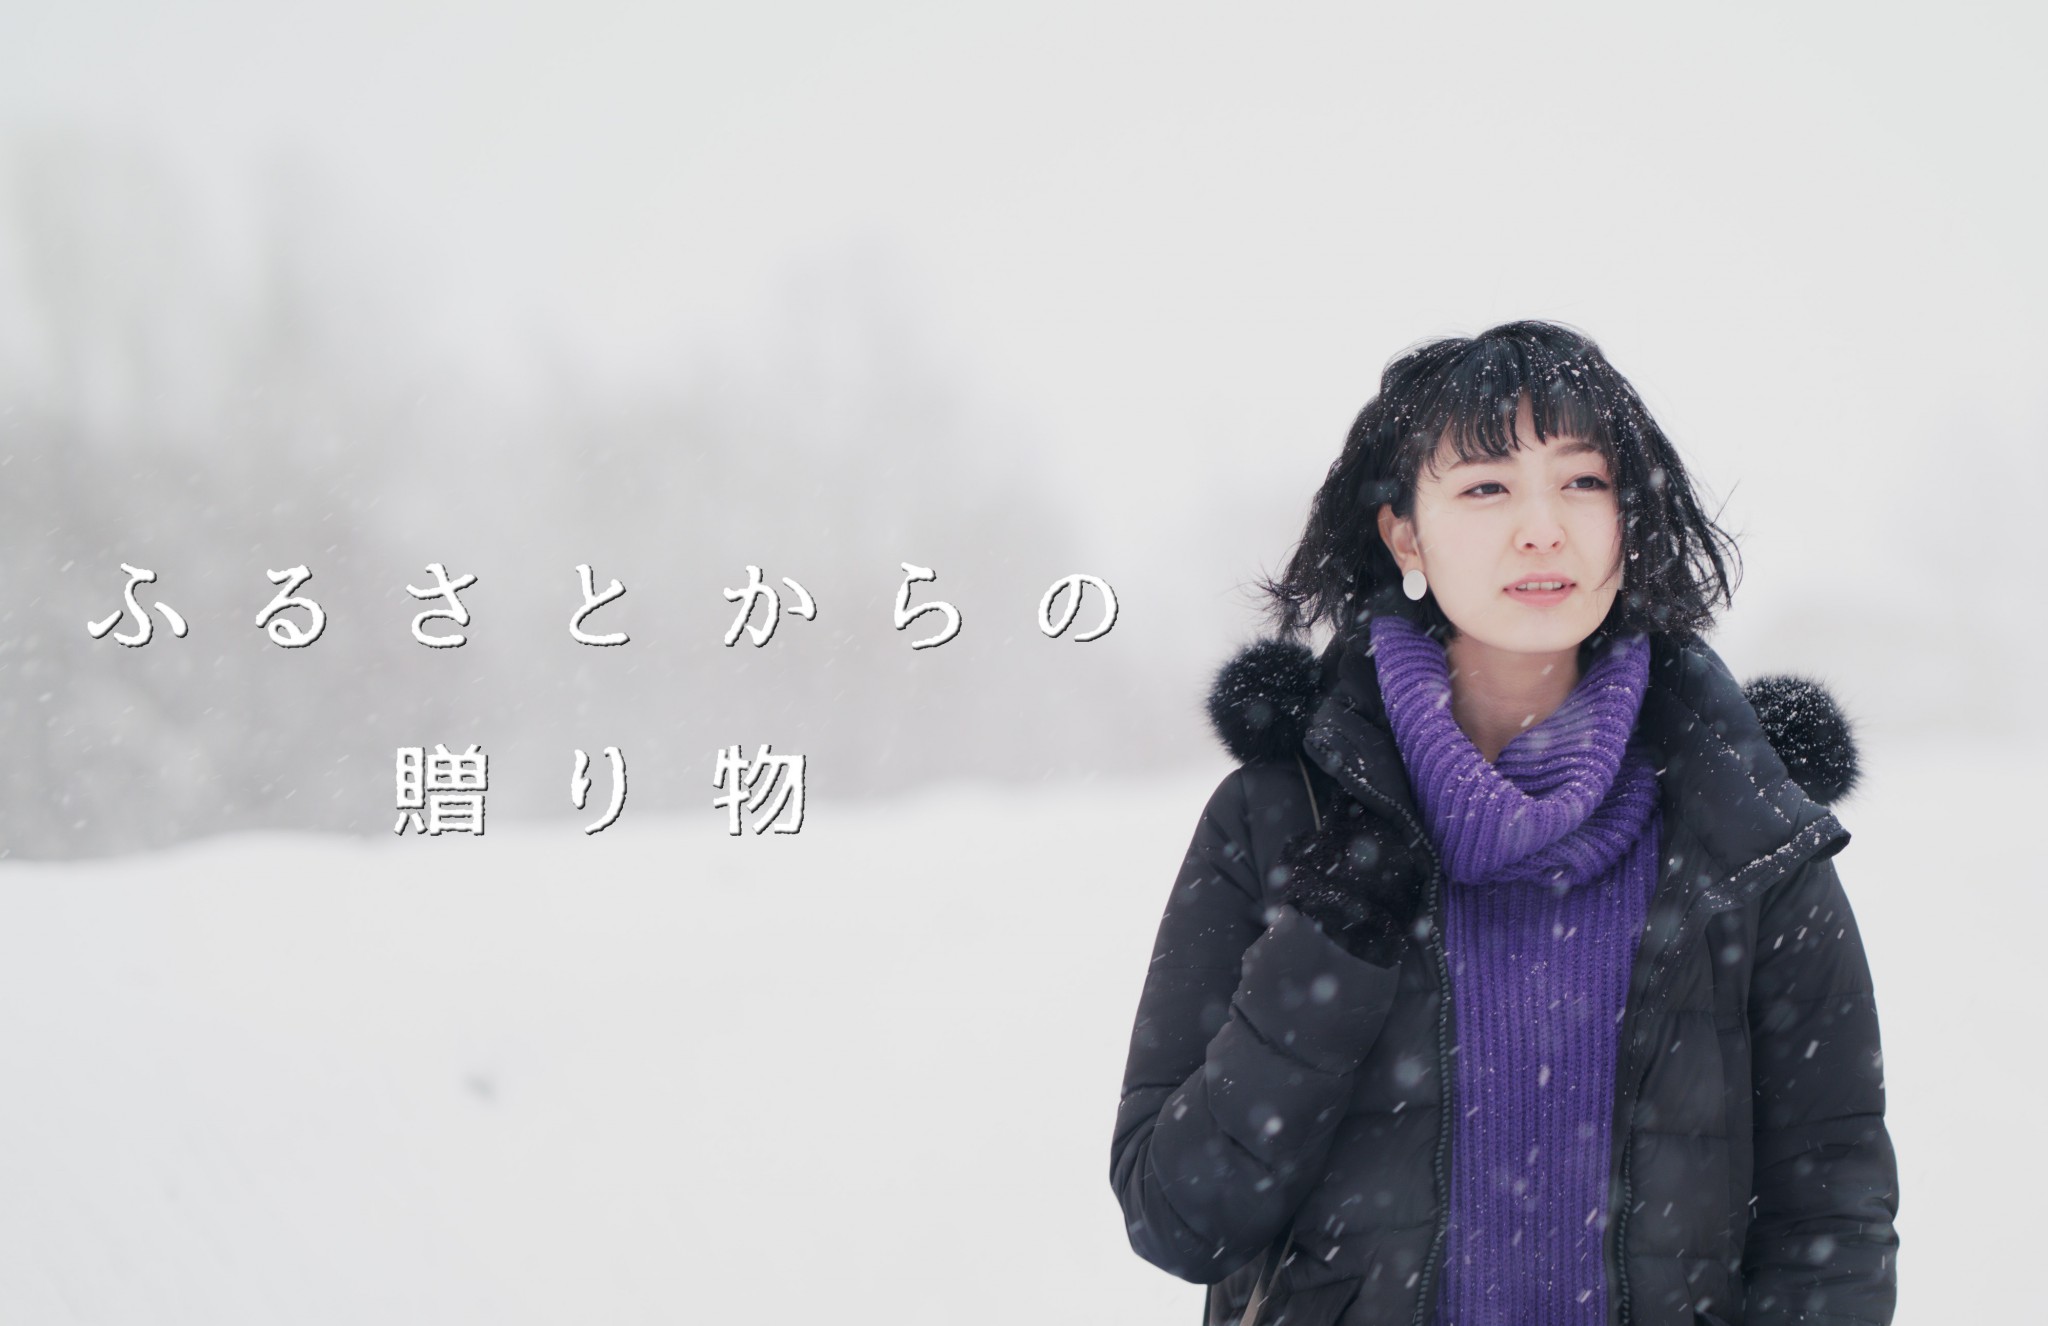 いま注目の若手俳優・中島広稀が難病に向き合う青年を好演 ショートフィルム『B